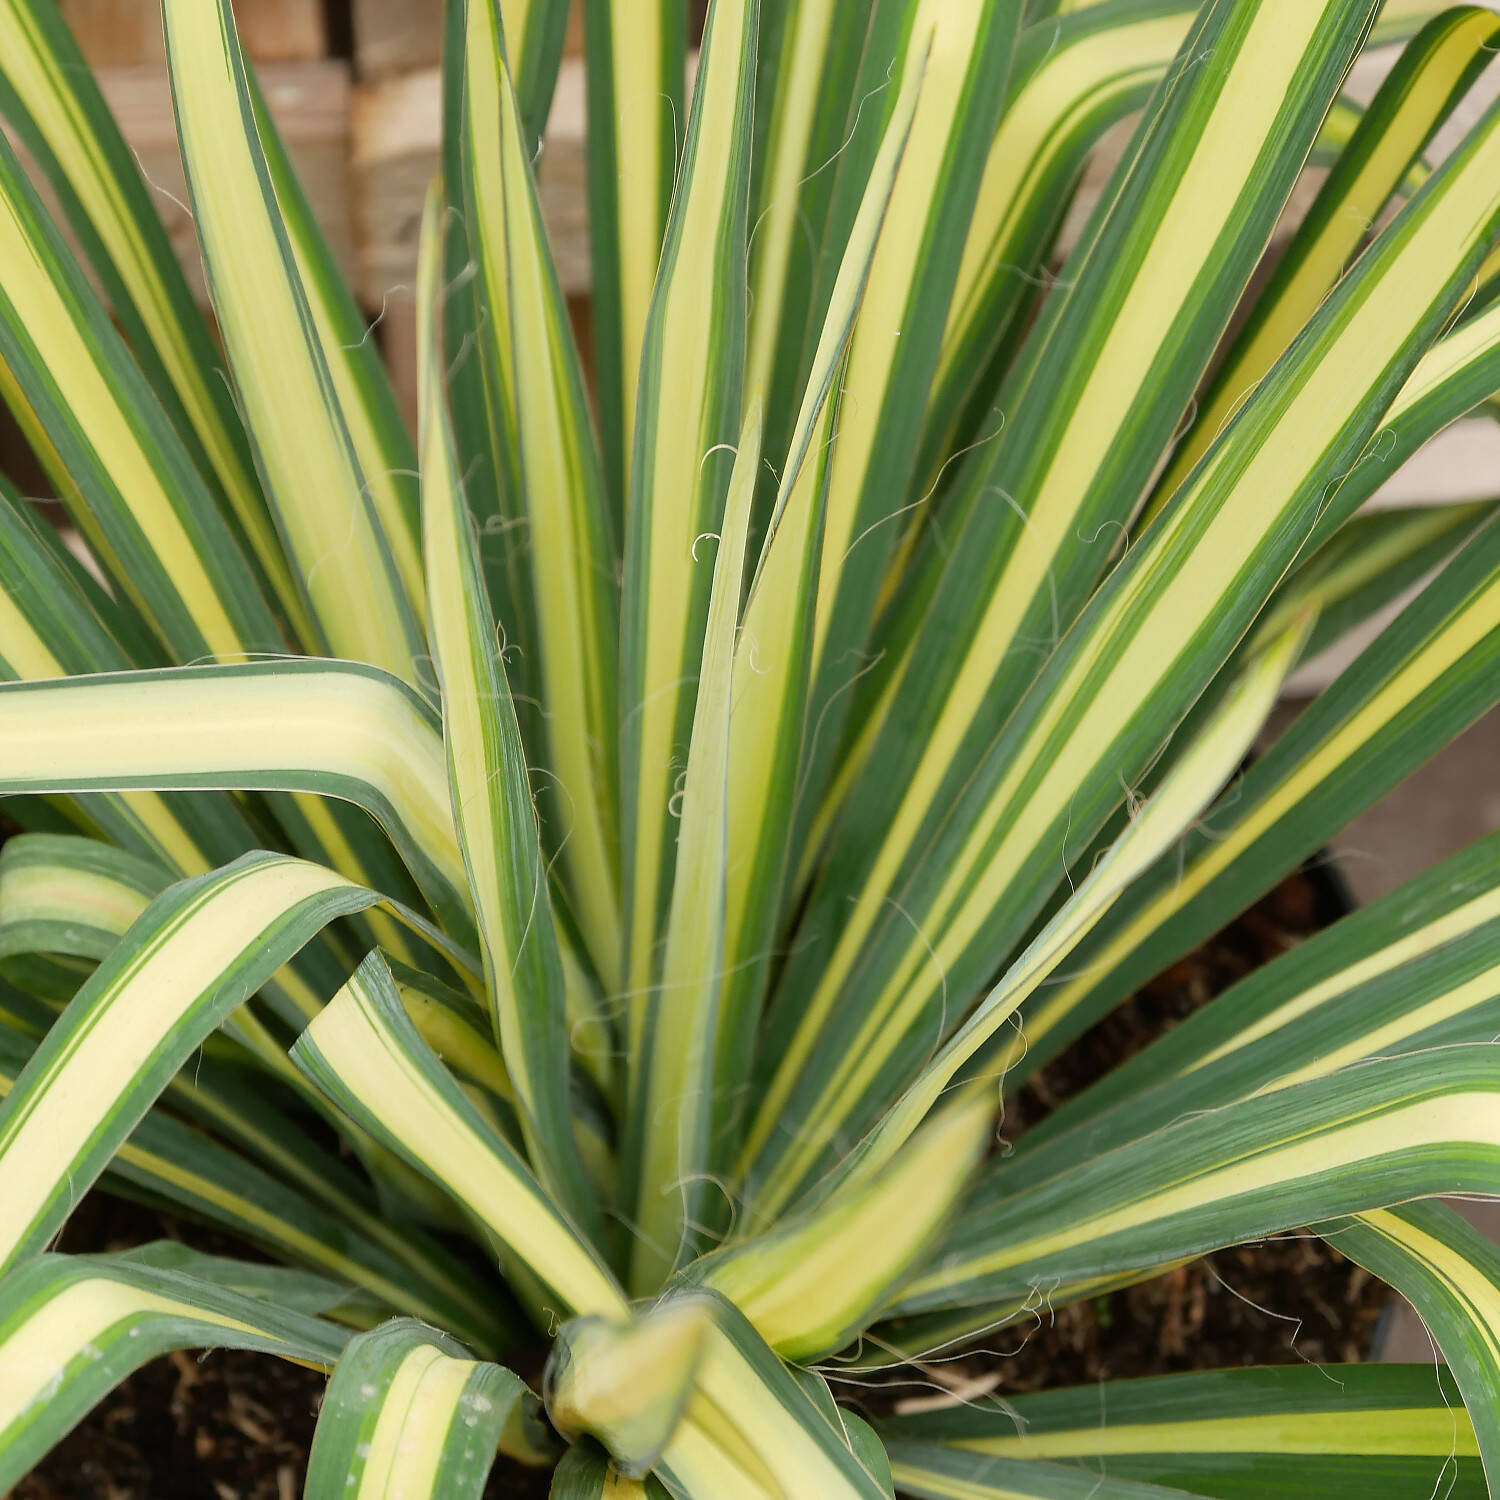  Palmlilie 'Golden Sword' - Yucca flaccida 'Golden Sword'